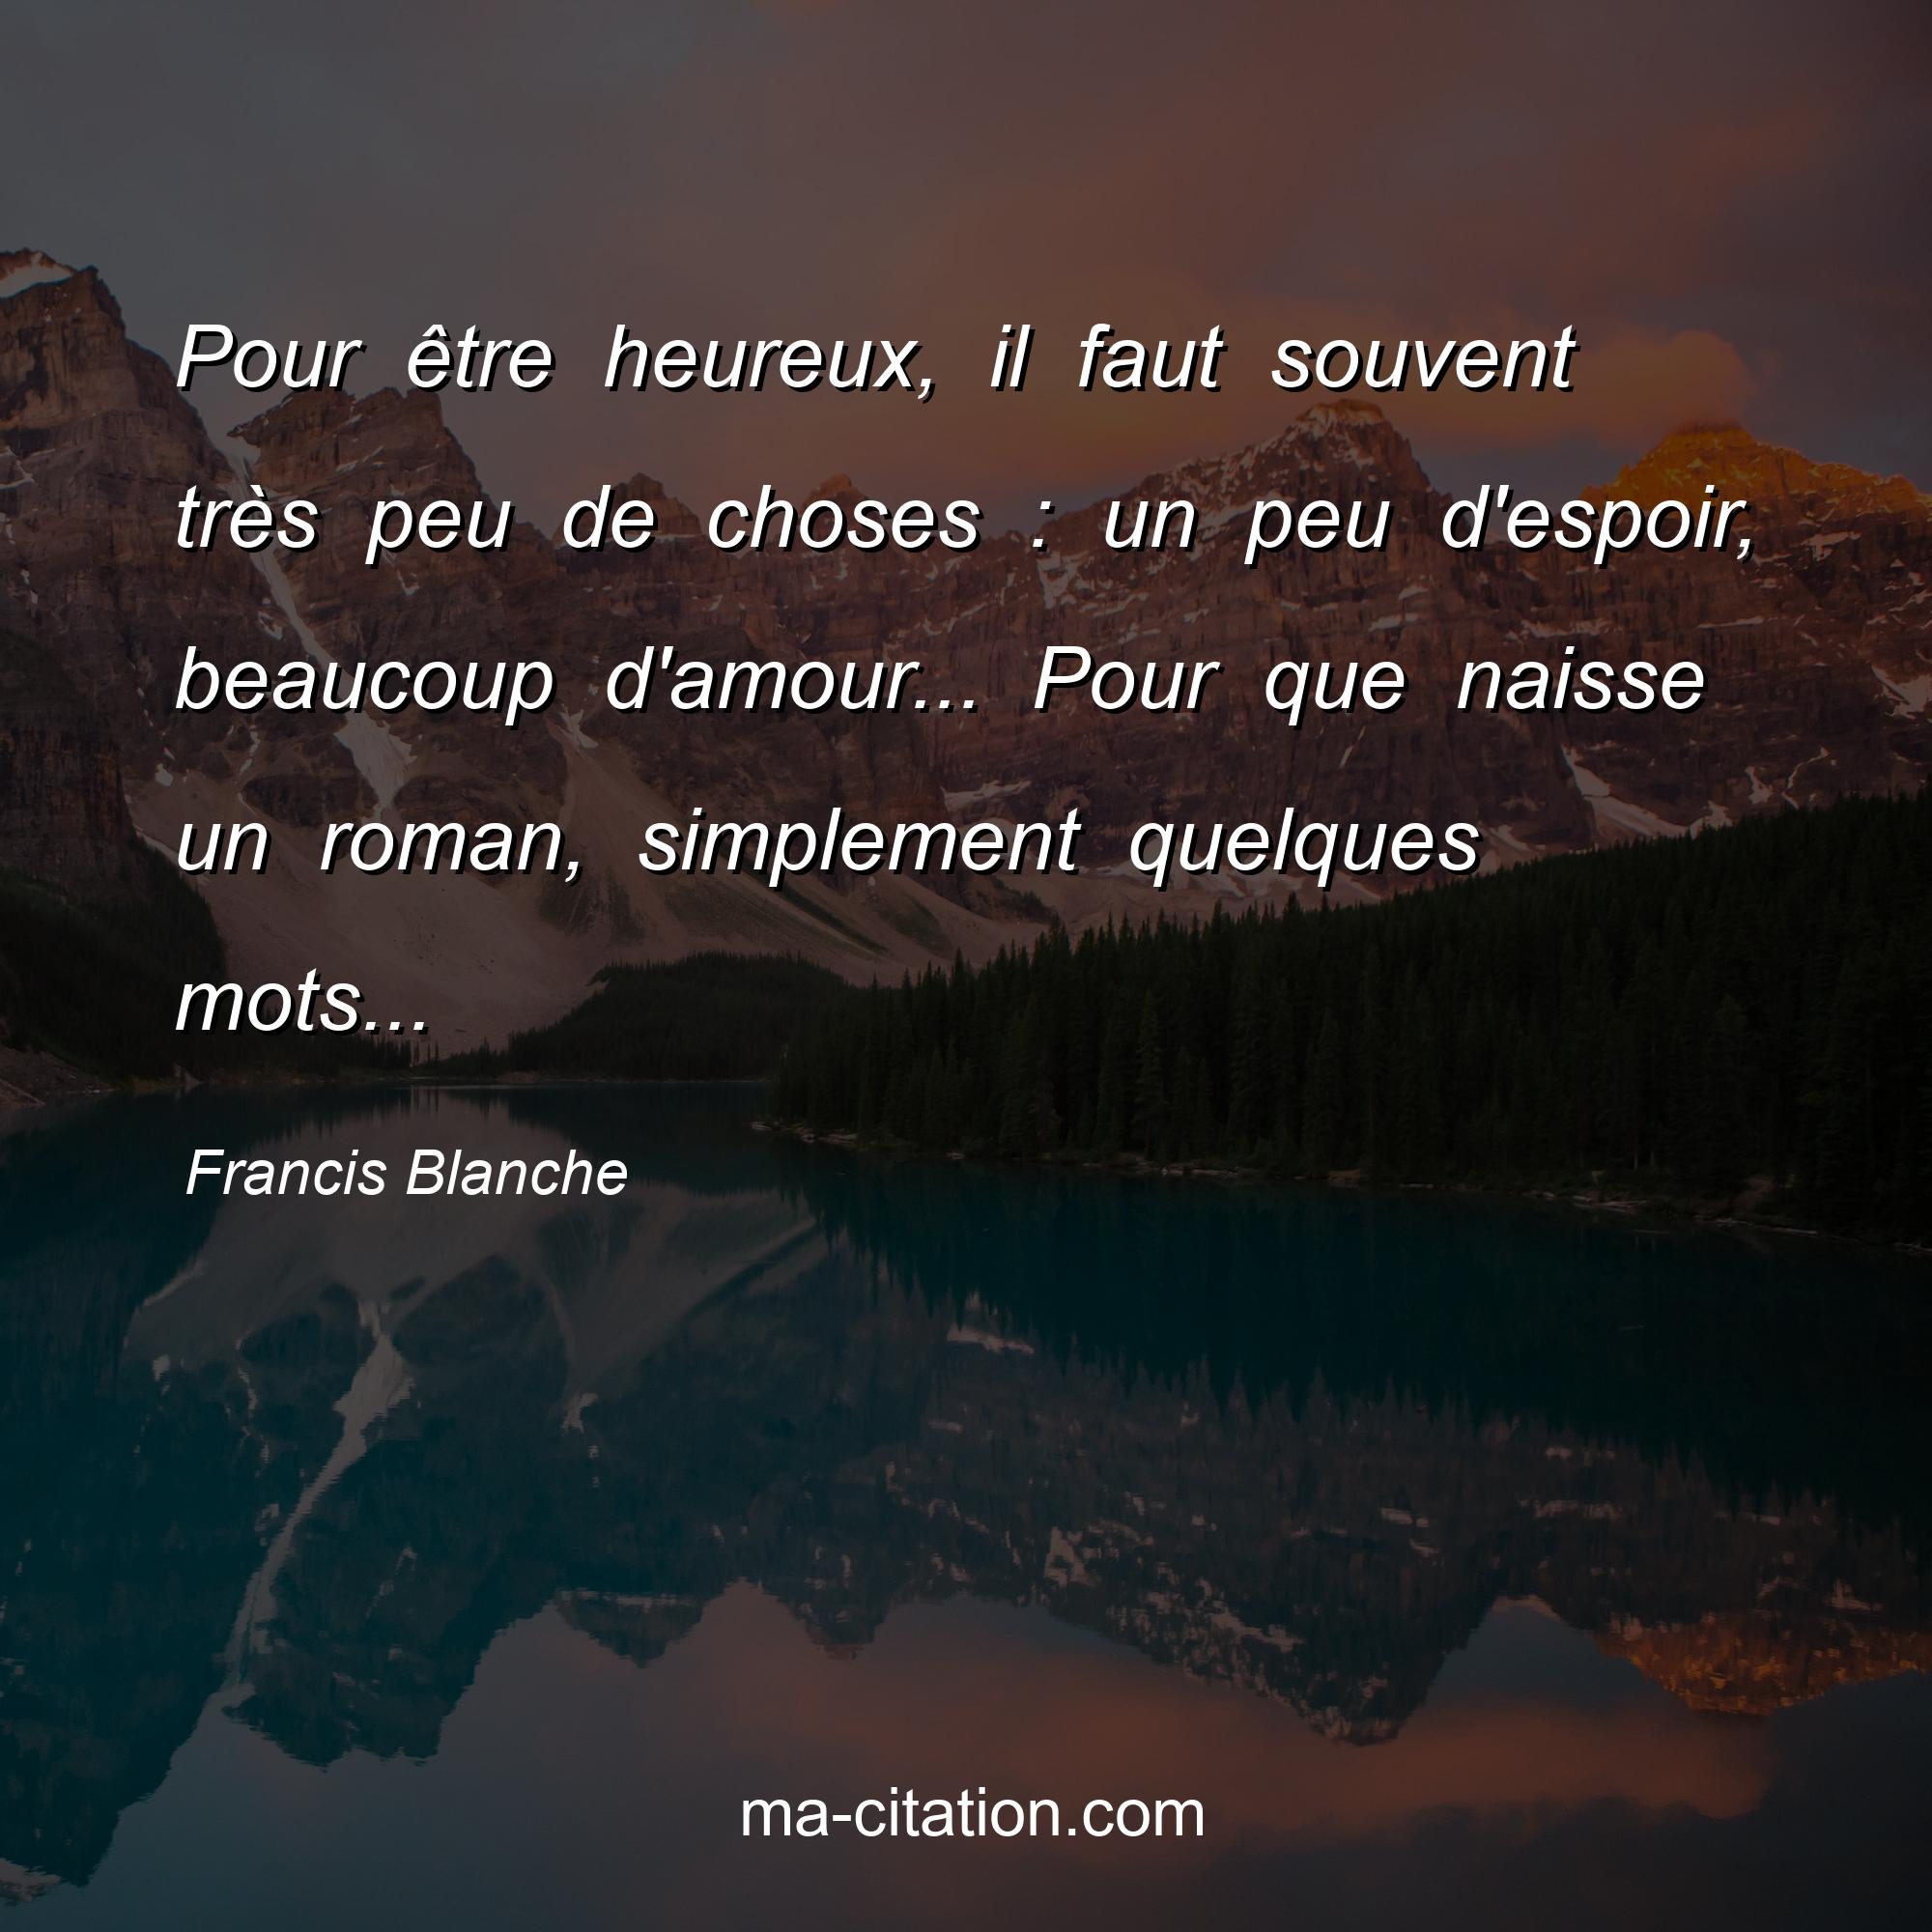 Francis Blanche : Pour être heureux, il faut souvent très peu de choses : un peu d'espoir, beaucoup d'amour... Pour que naisse un roman, simplement quelques mots...